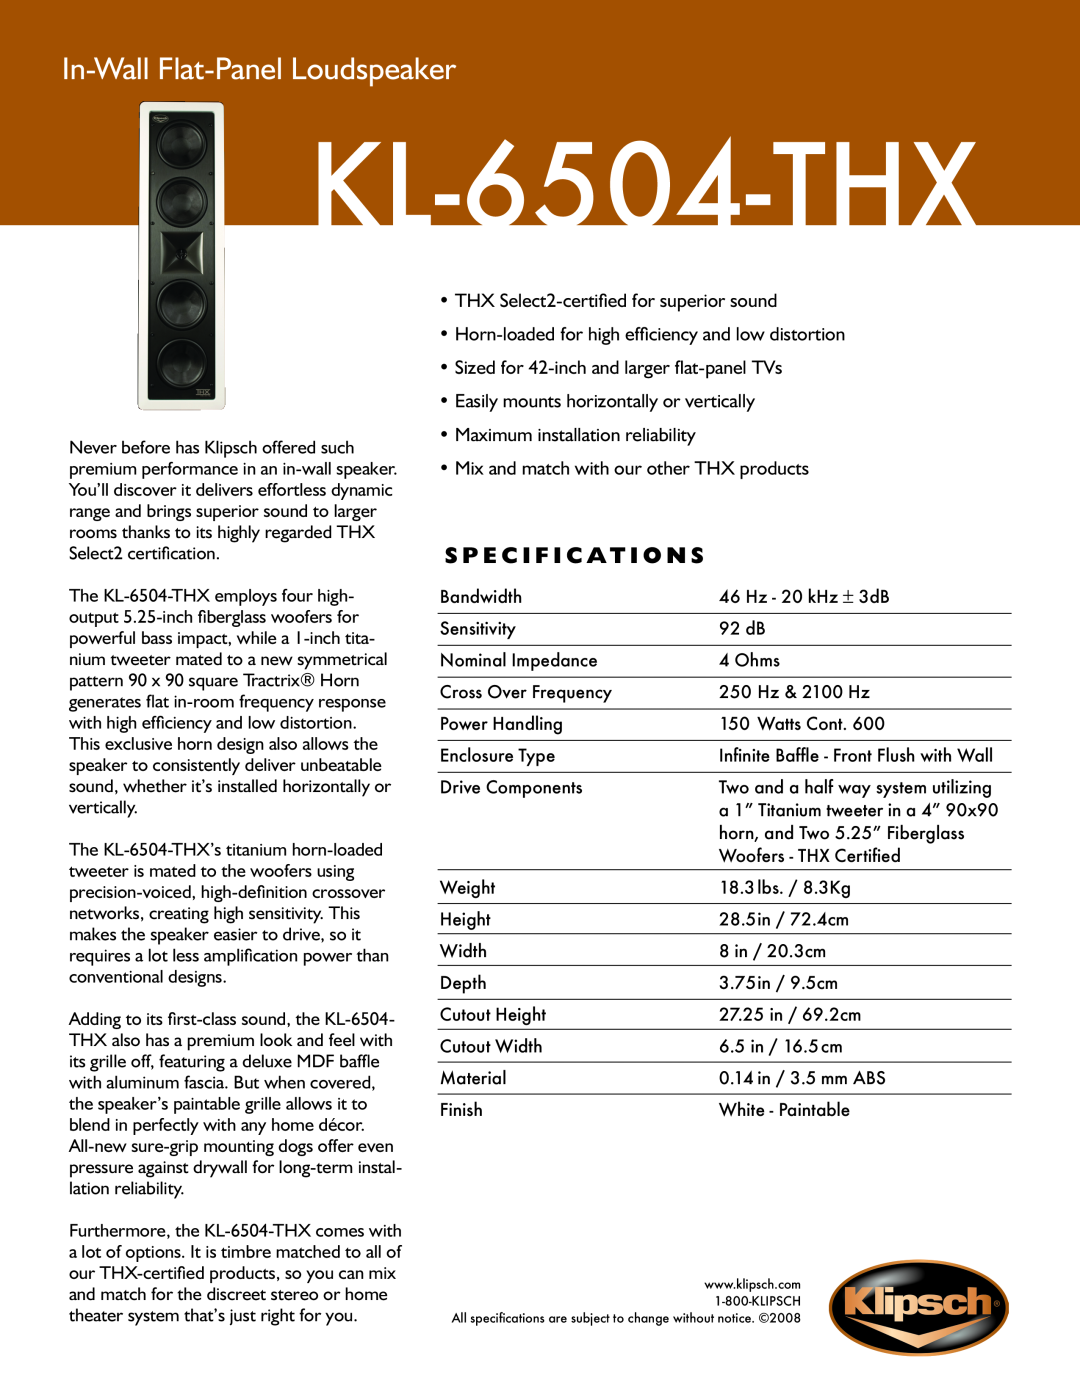 Klipsch KL-6504-THX specifications In-Wall Flat-PanelLoudspeaker, S p e c i f i c a t i o n s 